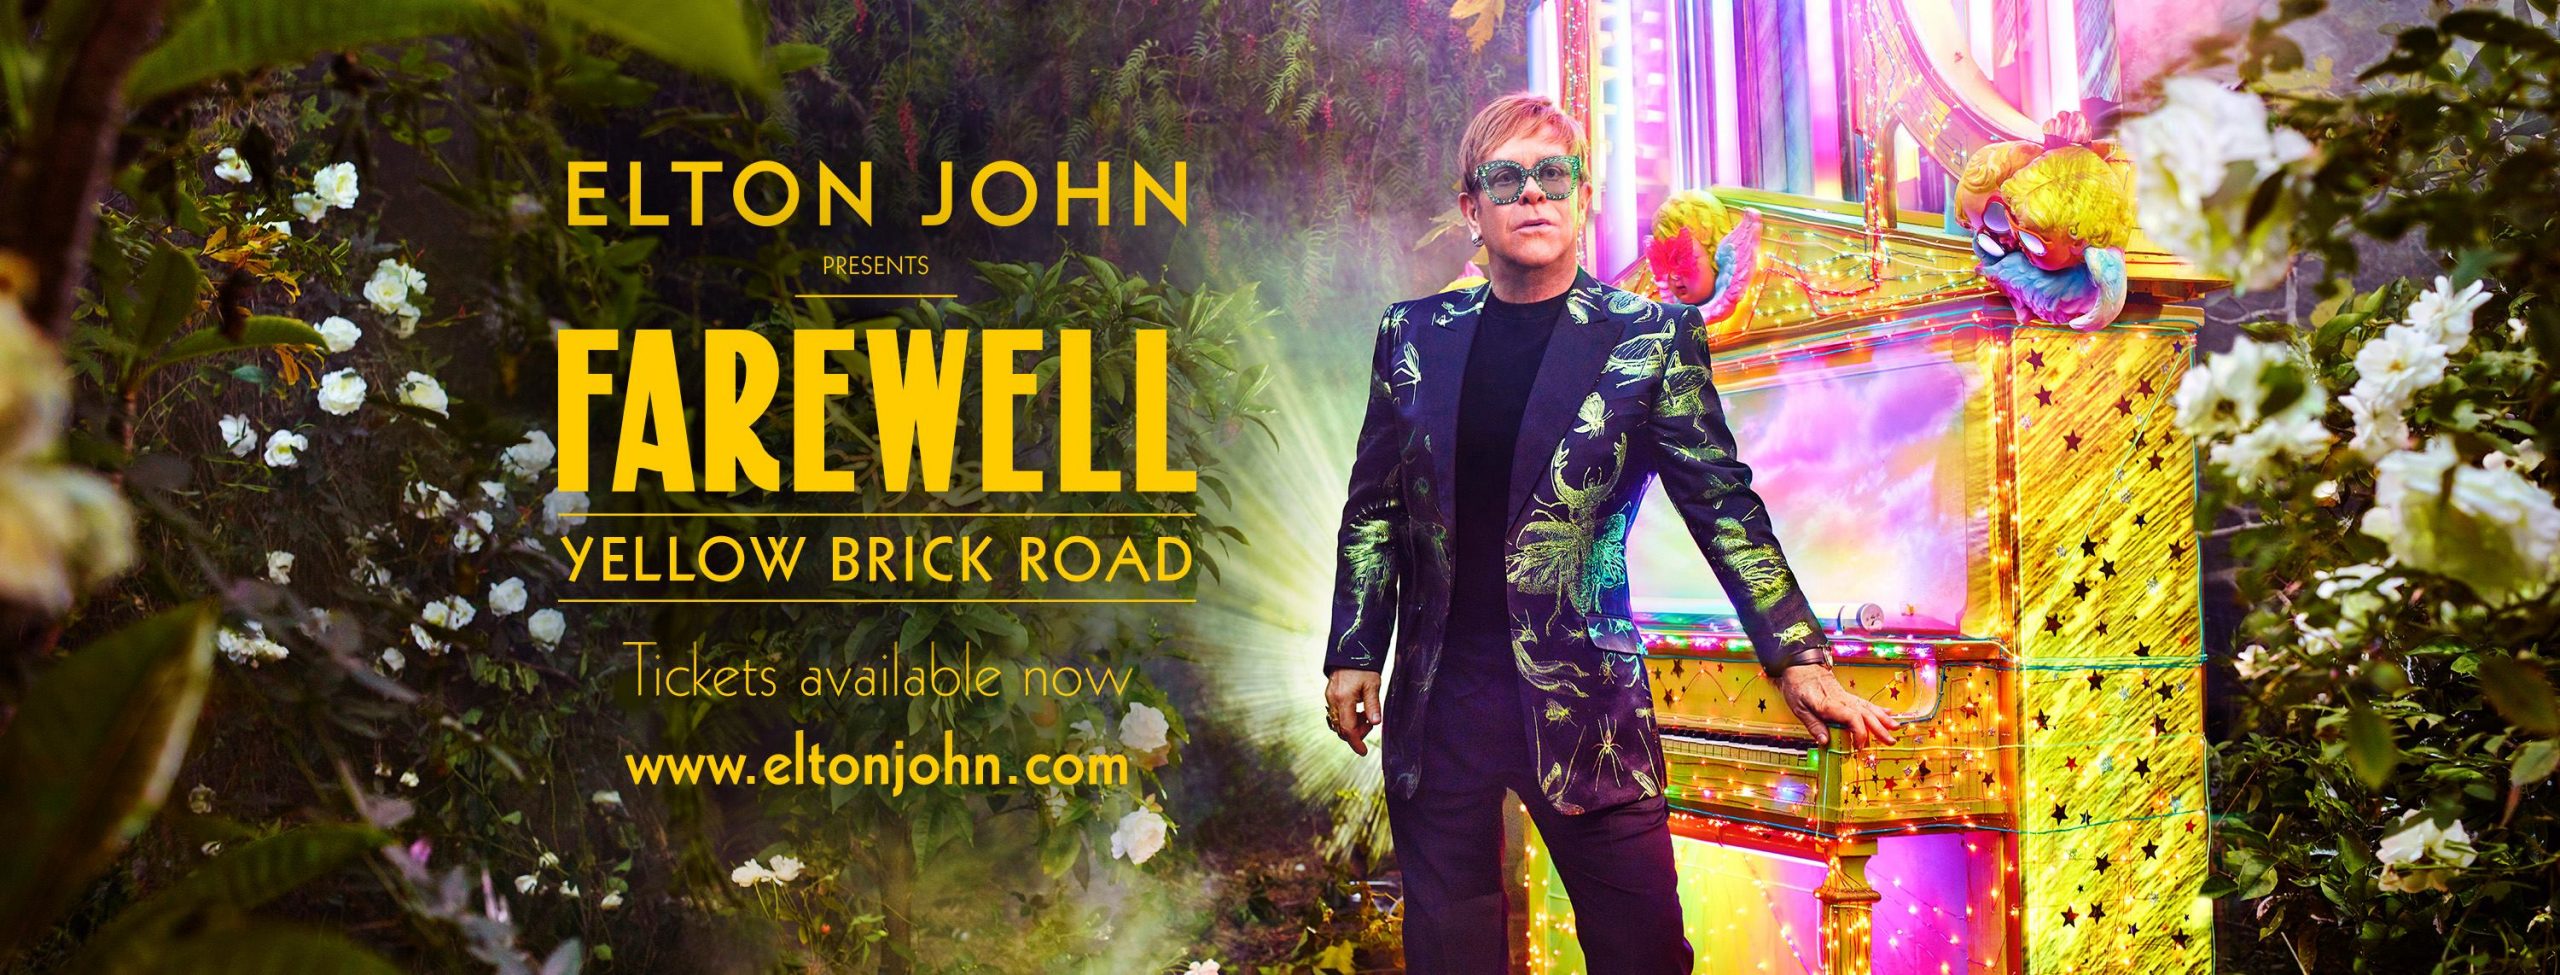 Elton JOHN met en place son ultime tournée